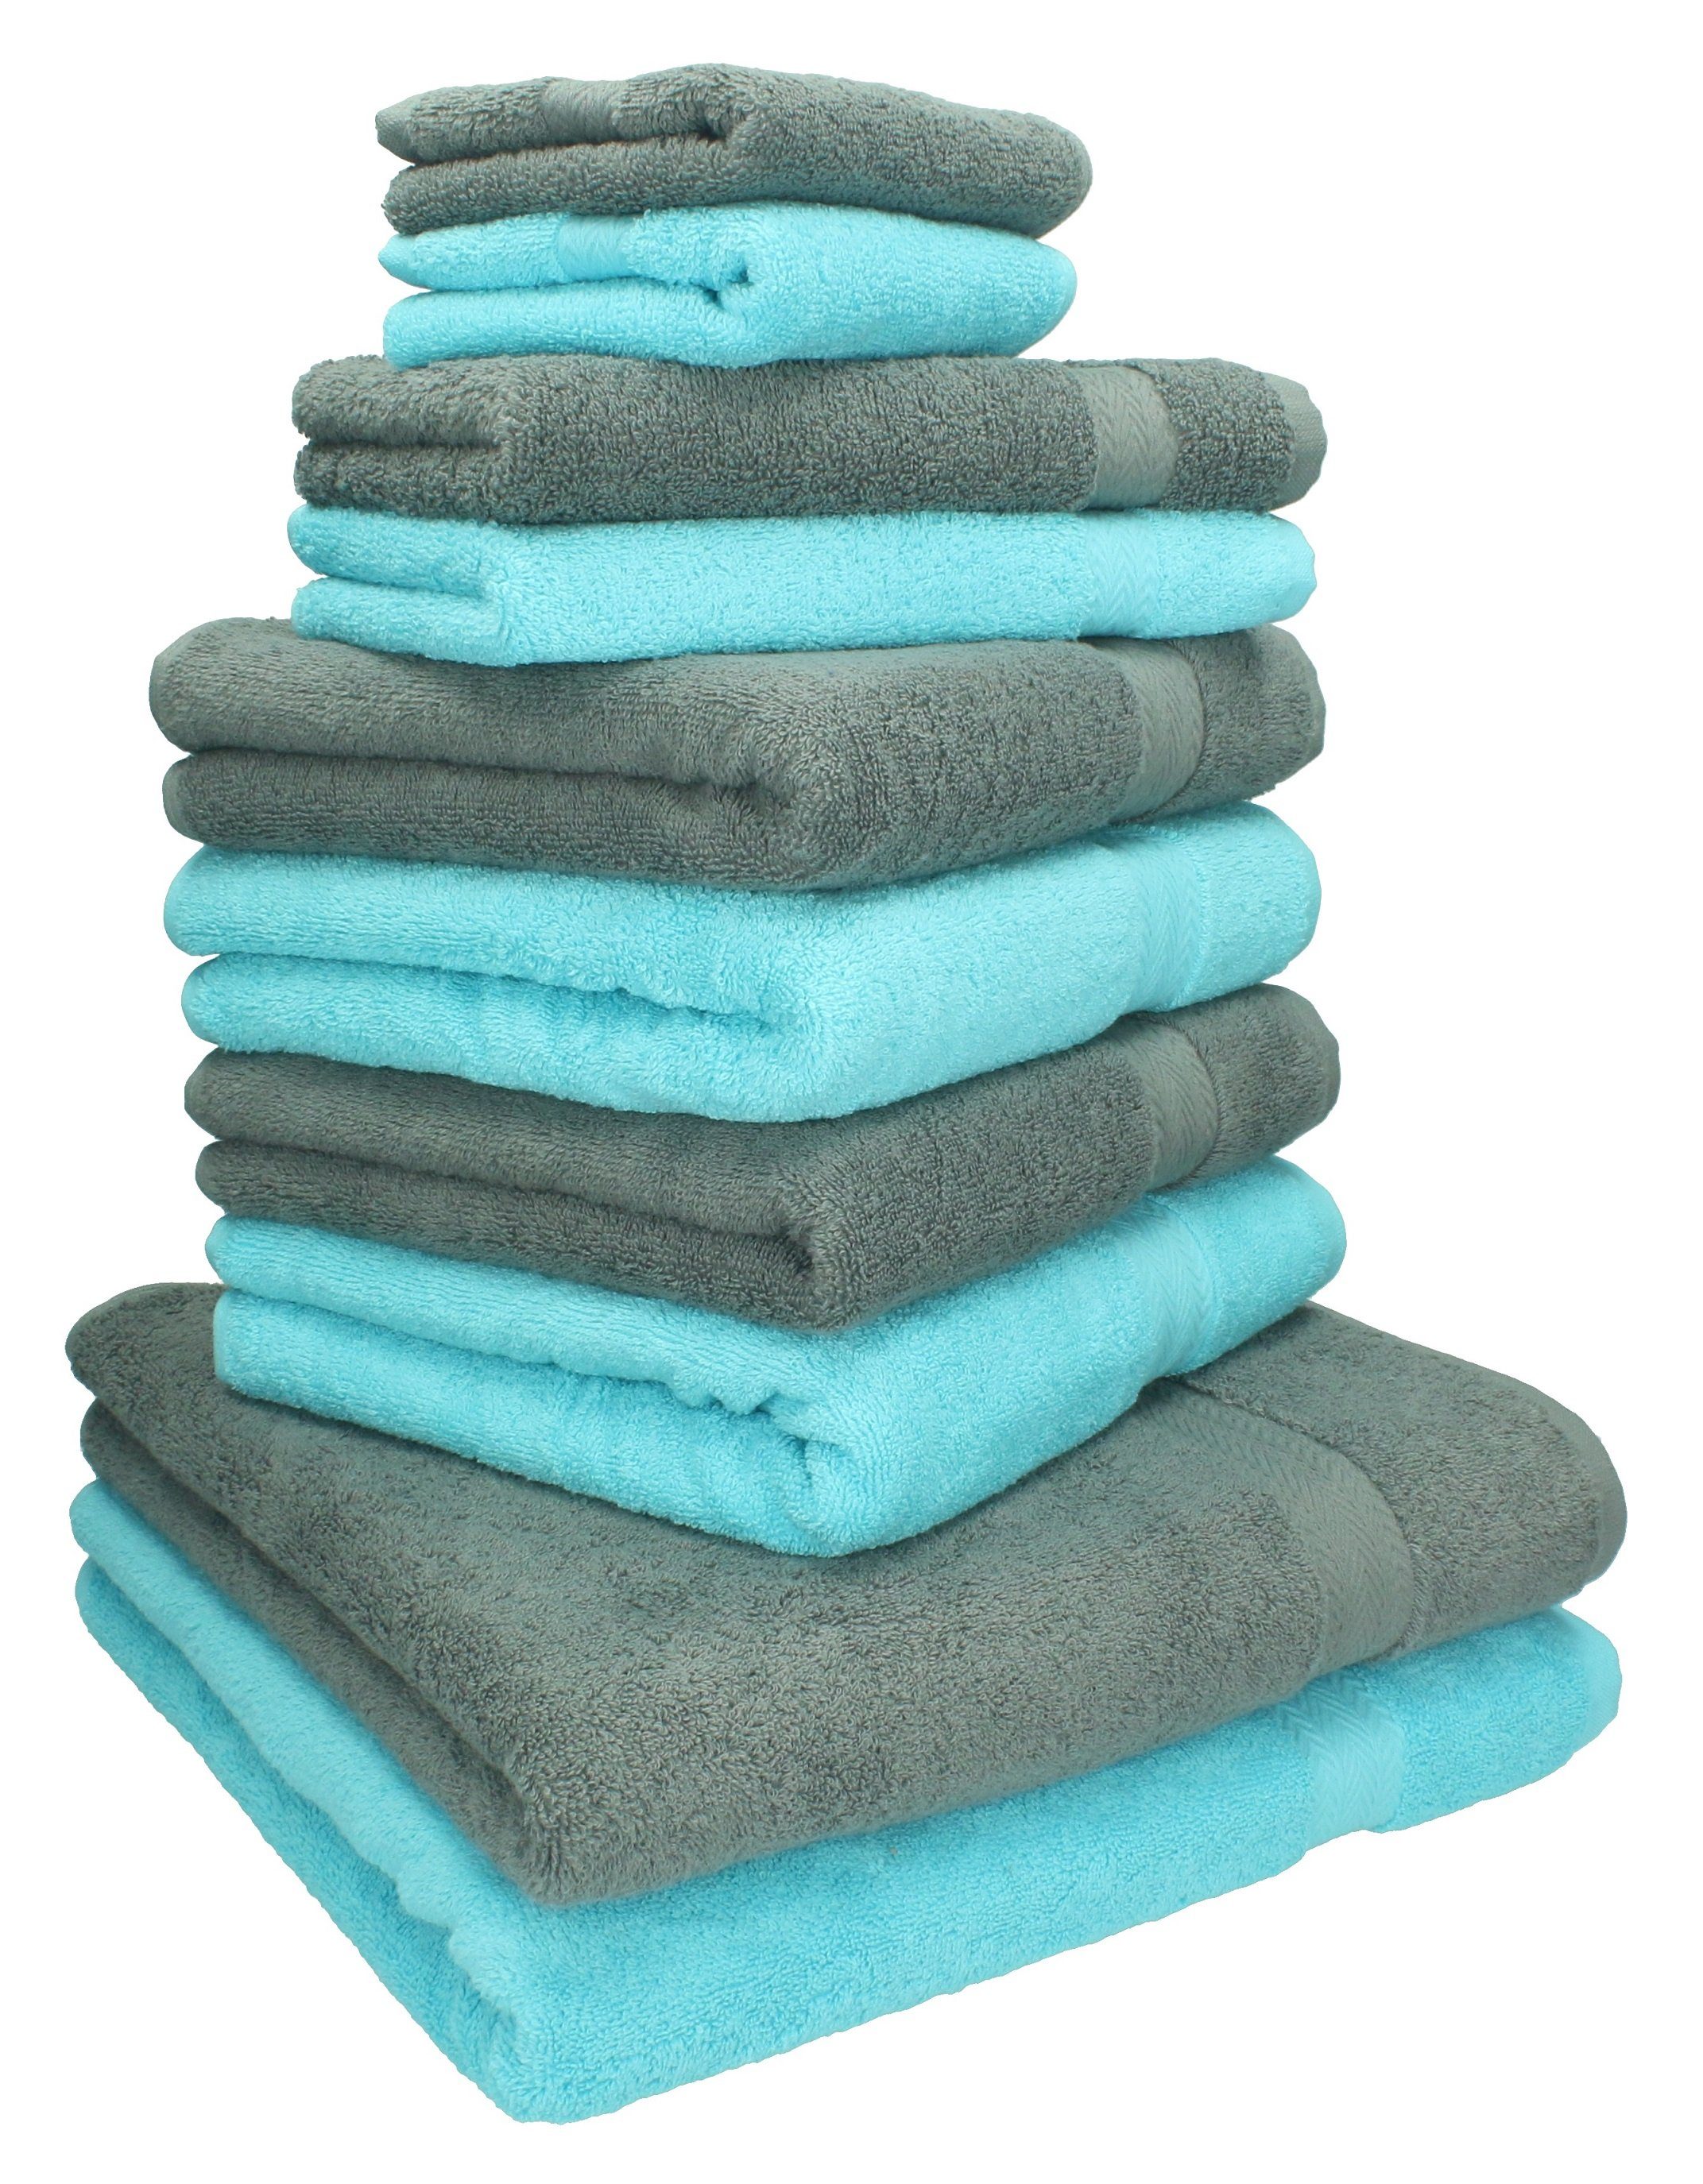 Baumwolle Classic türkis Farbe Set Betz Handtuch 100% anthrazit und Handtuch-Set grau, 10-TLG.